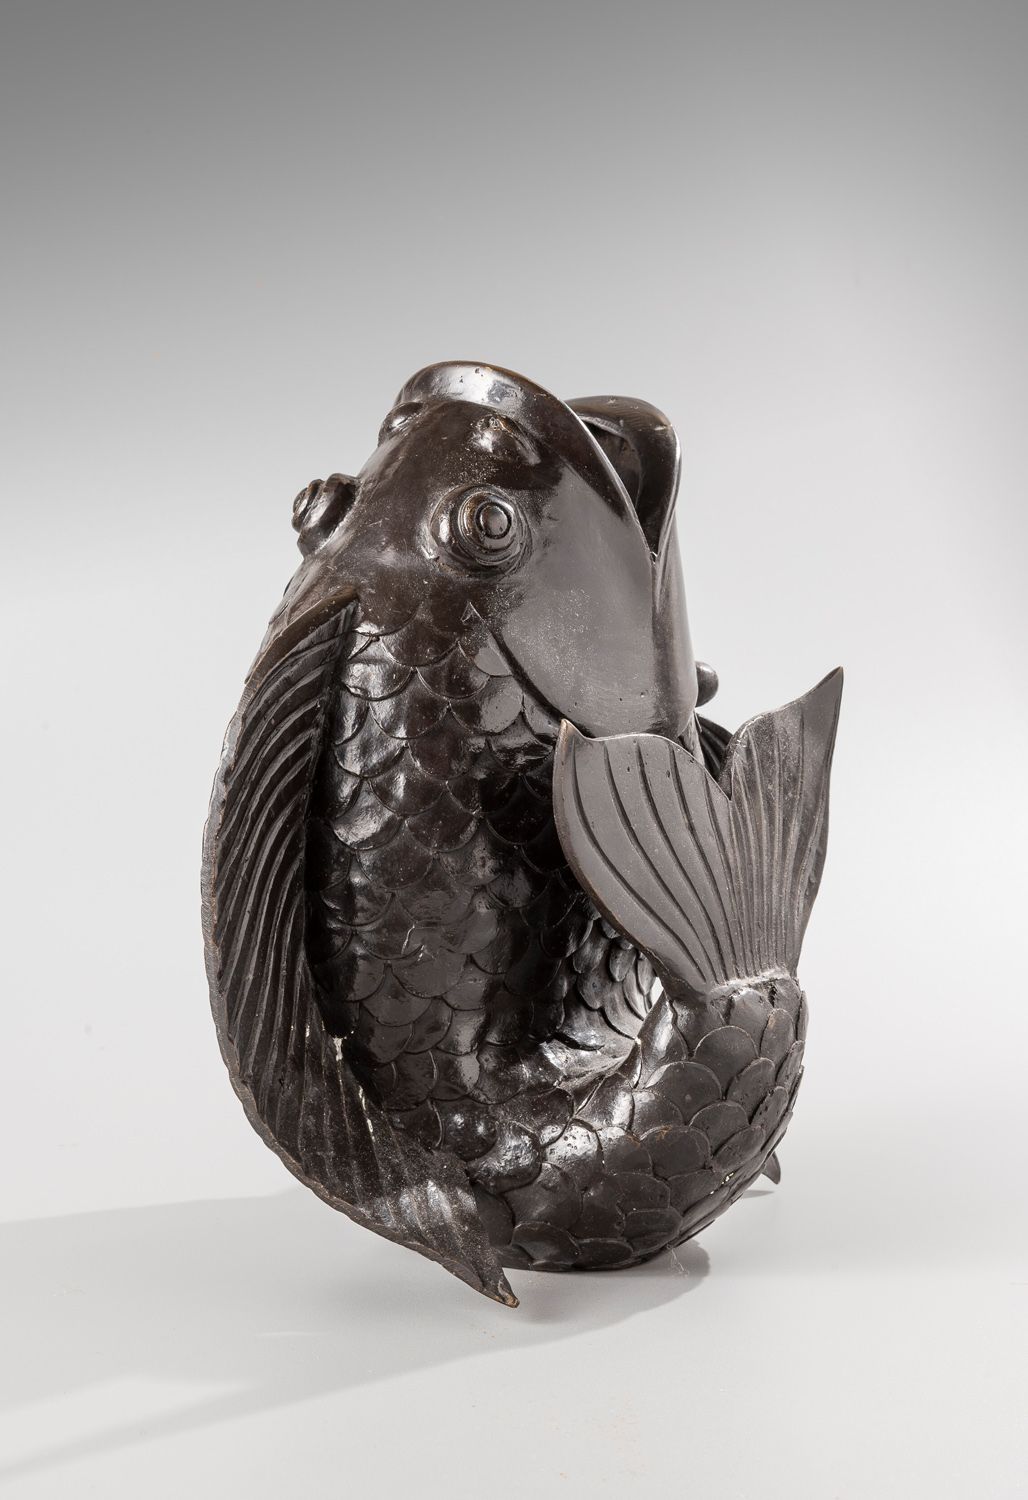 Null 一个青铜花瓶

带褐色铜锈，显示一条鱼。

可能是20世纪的日本作品。

H.23厘米